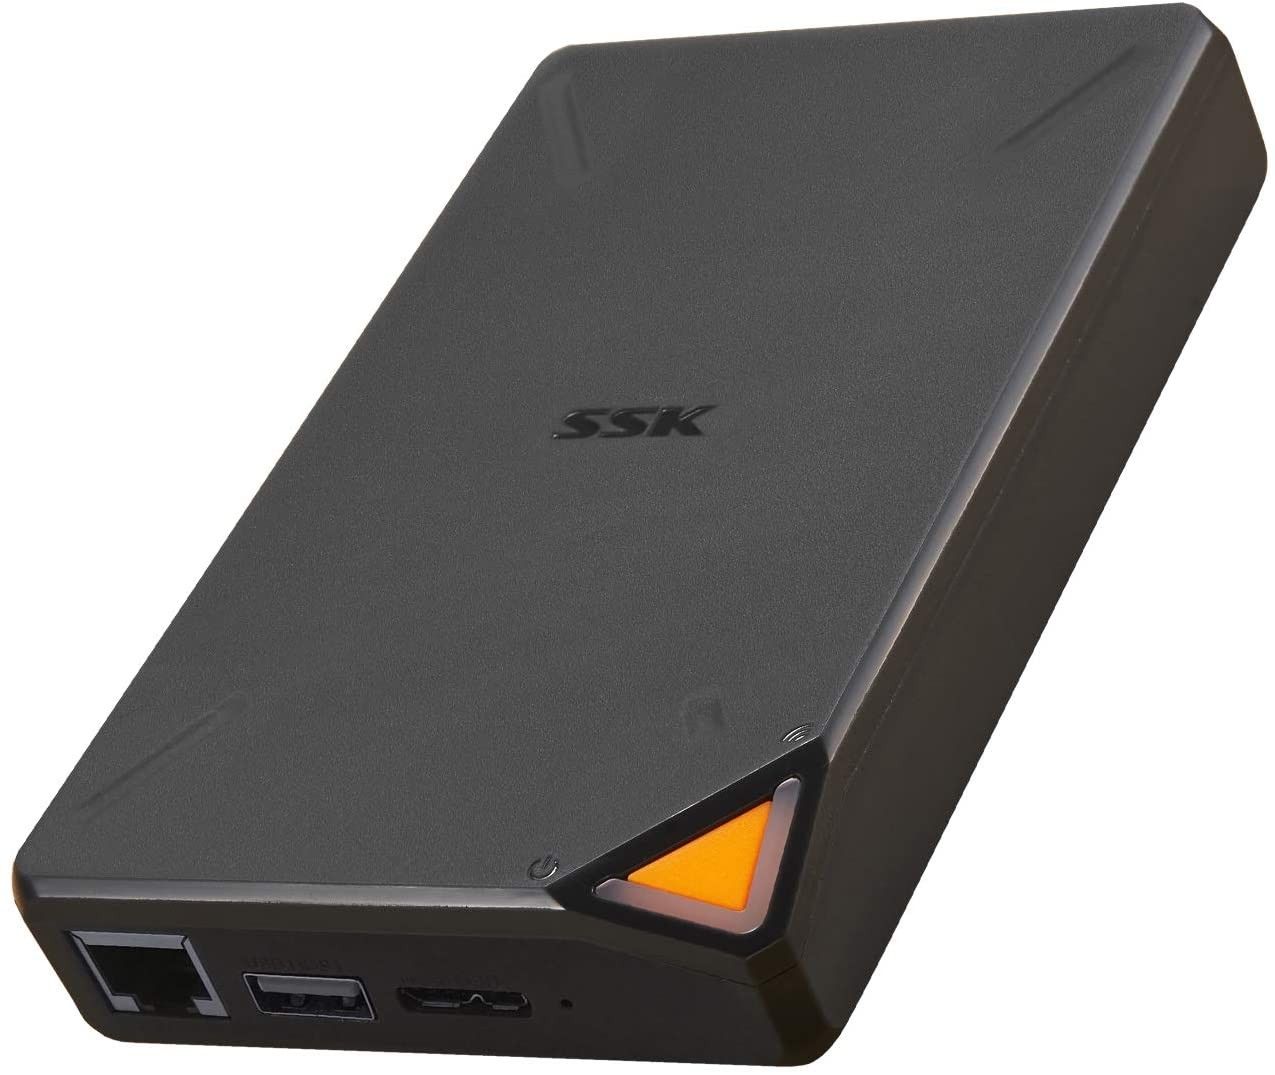 SSK 1TB Portabel NAS SSD Nirkabel Eksternal